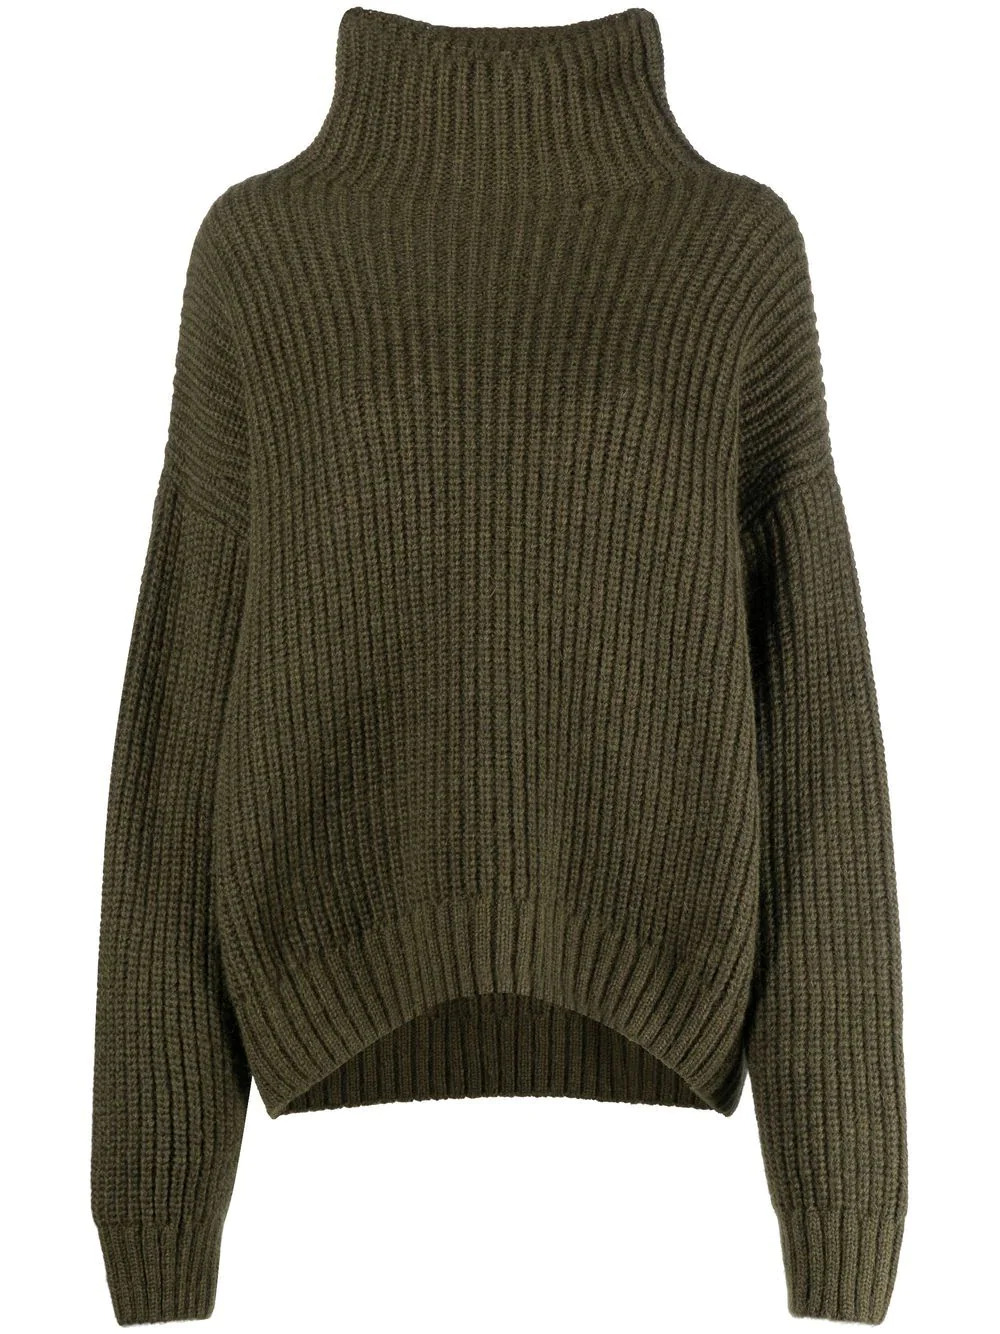 Sydney Knit Sweater in Green